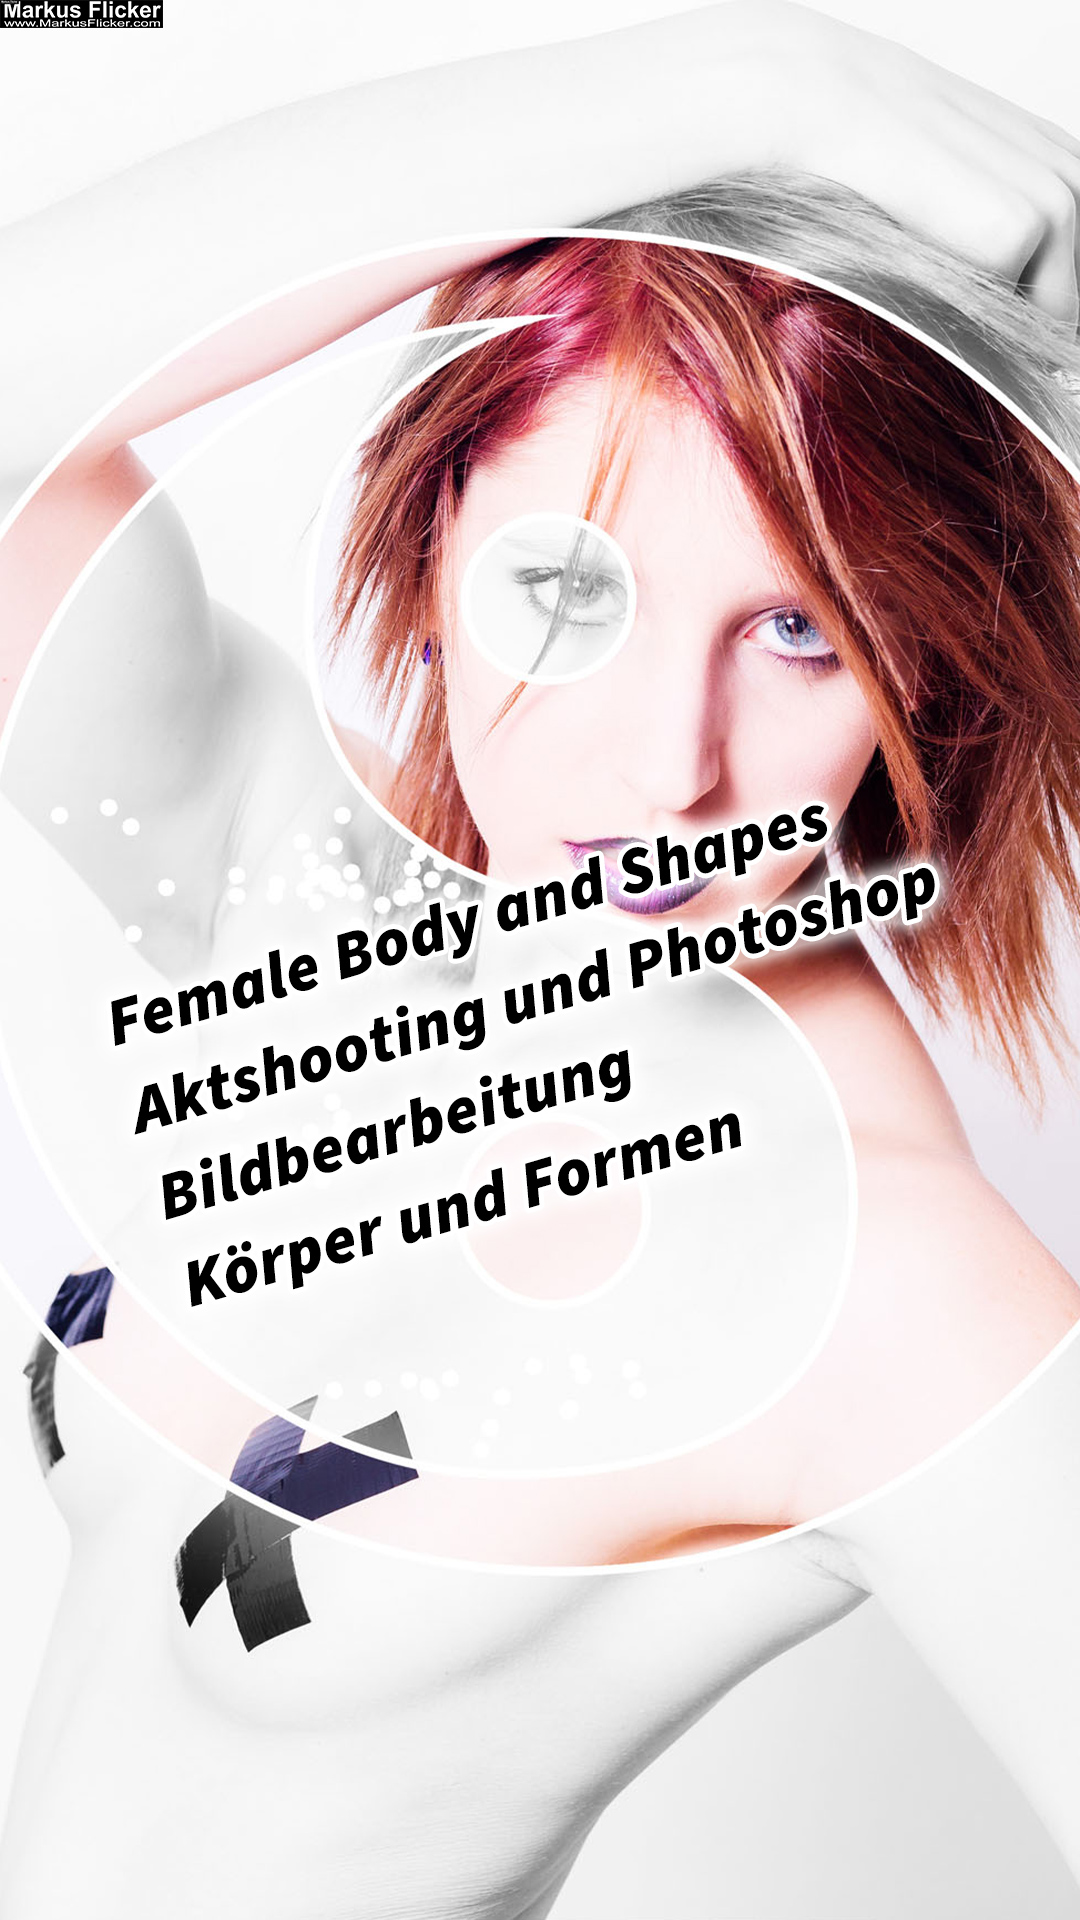 Female Body and Shapes Aktshooting und Photoshop Bildbearbeitung Körper und Formen